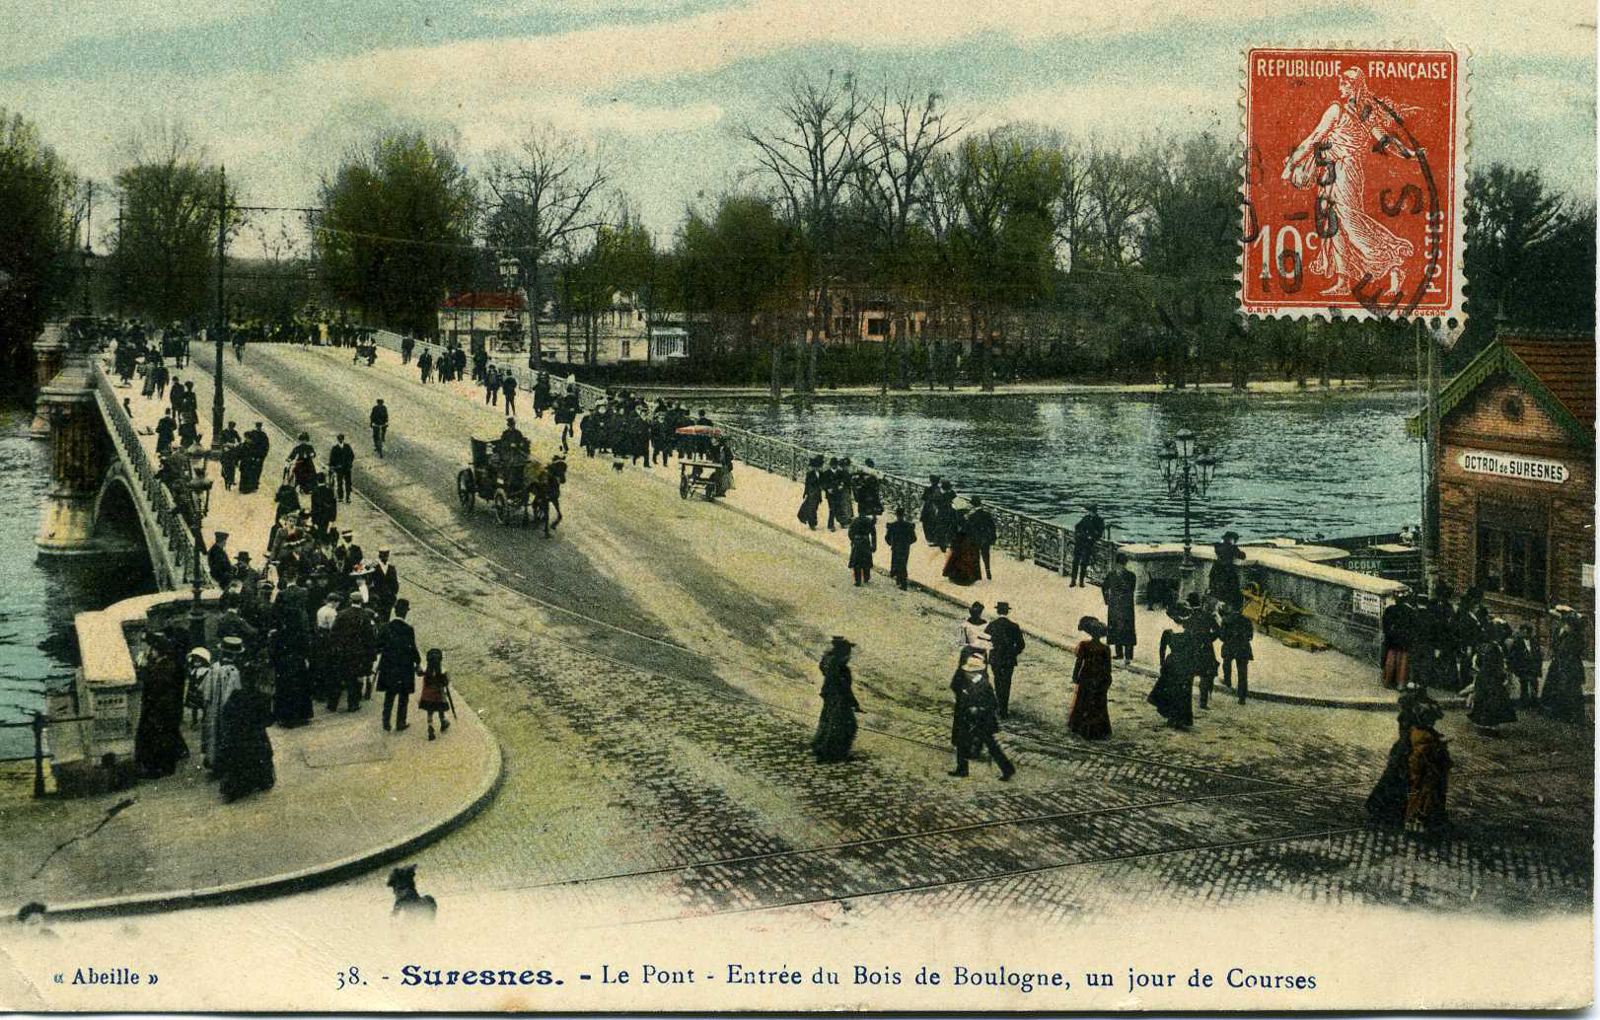 SURESNES - Le Pont - Entrée du Bois de Boulogne, un jour de Courses